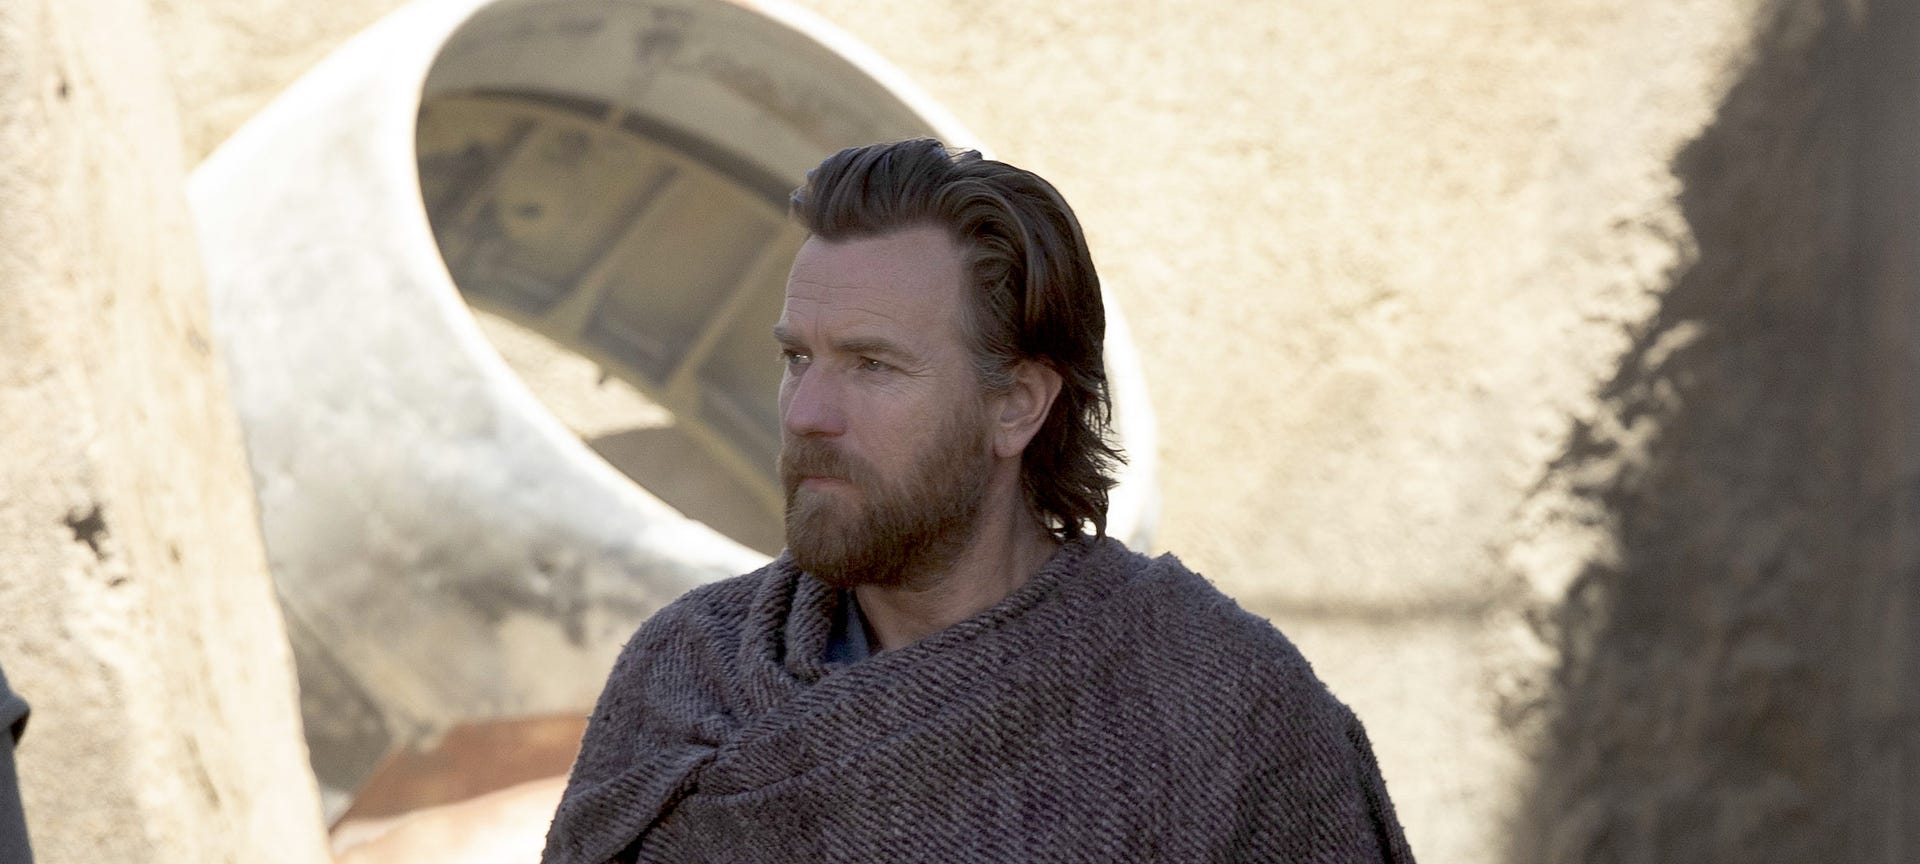 Ewan McGregor looks handsome in a beard and scruffy robes in Obi-Wan Kenobi on Disney Plus.